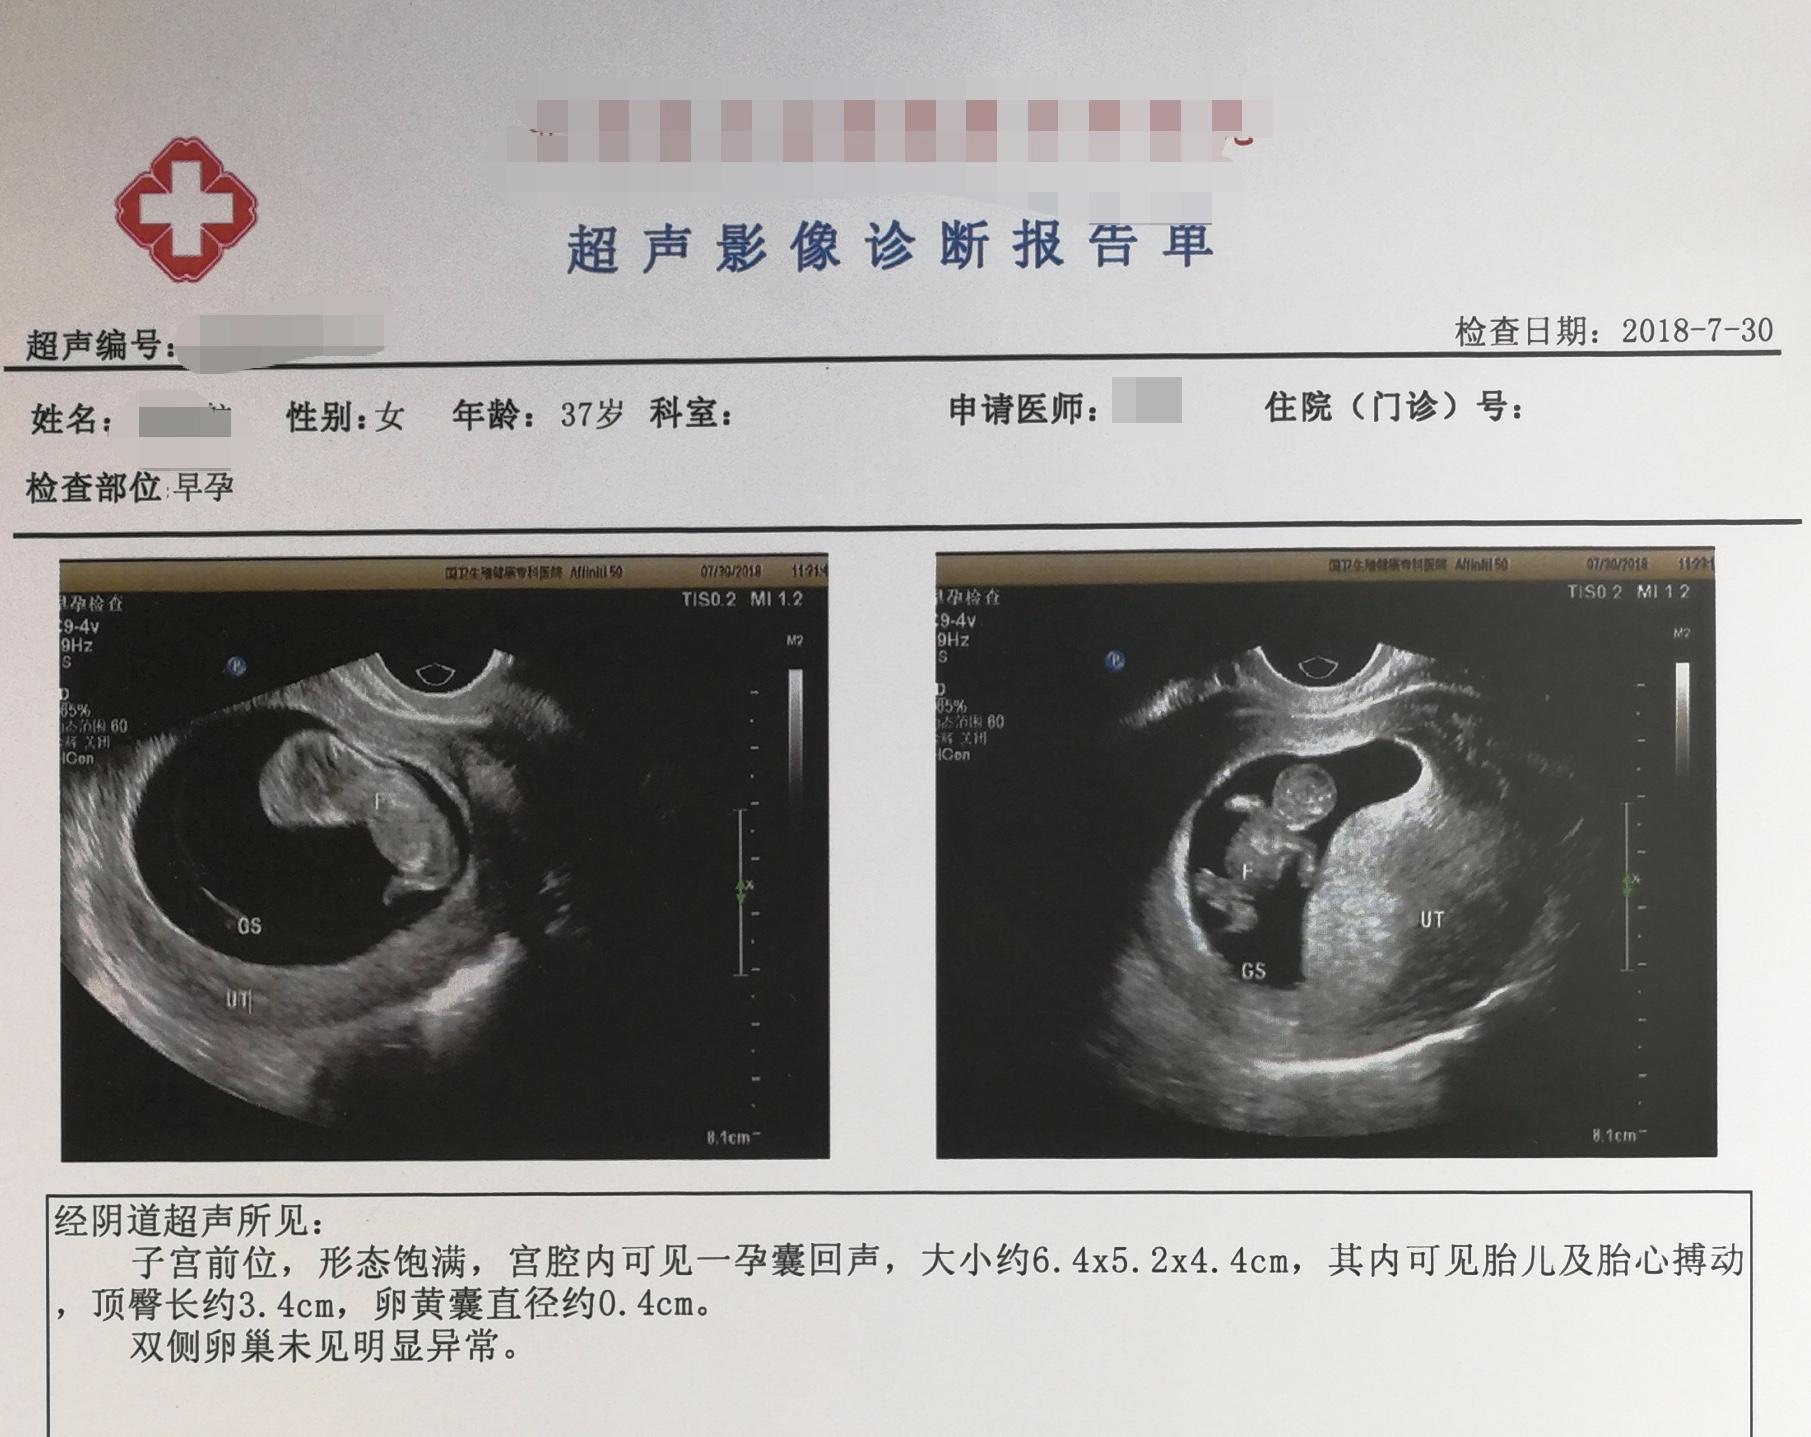 2018年7月A小滾珠的診斷報告C肚子裡的孩子第一次有了清晰的人形C受訪者供圖